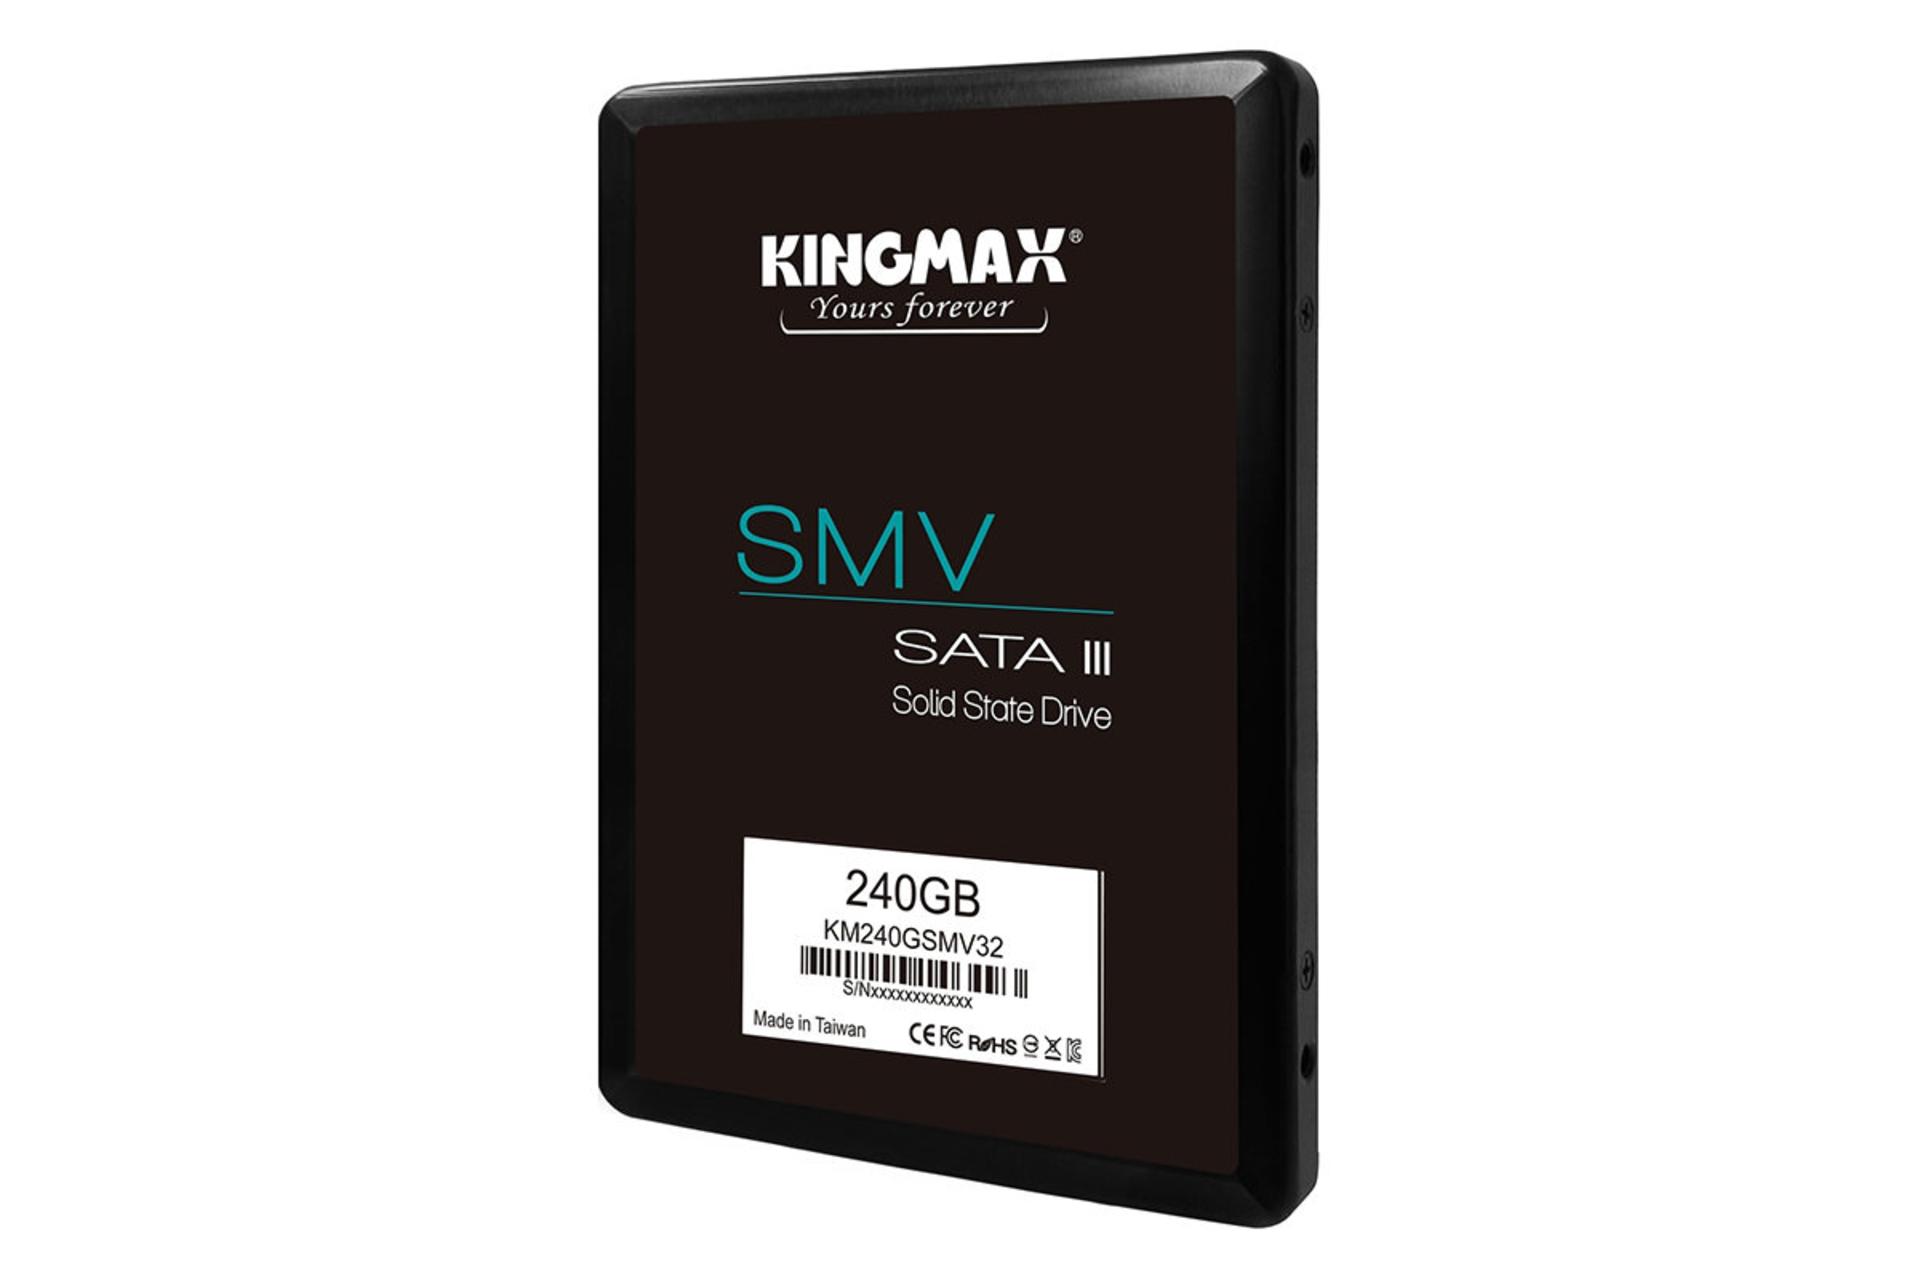 مرجع متخصصين ايران كينگ مكس KM120GSMV32 ظرفيت 240 گيگابايت / KingMax SMV32 240GB